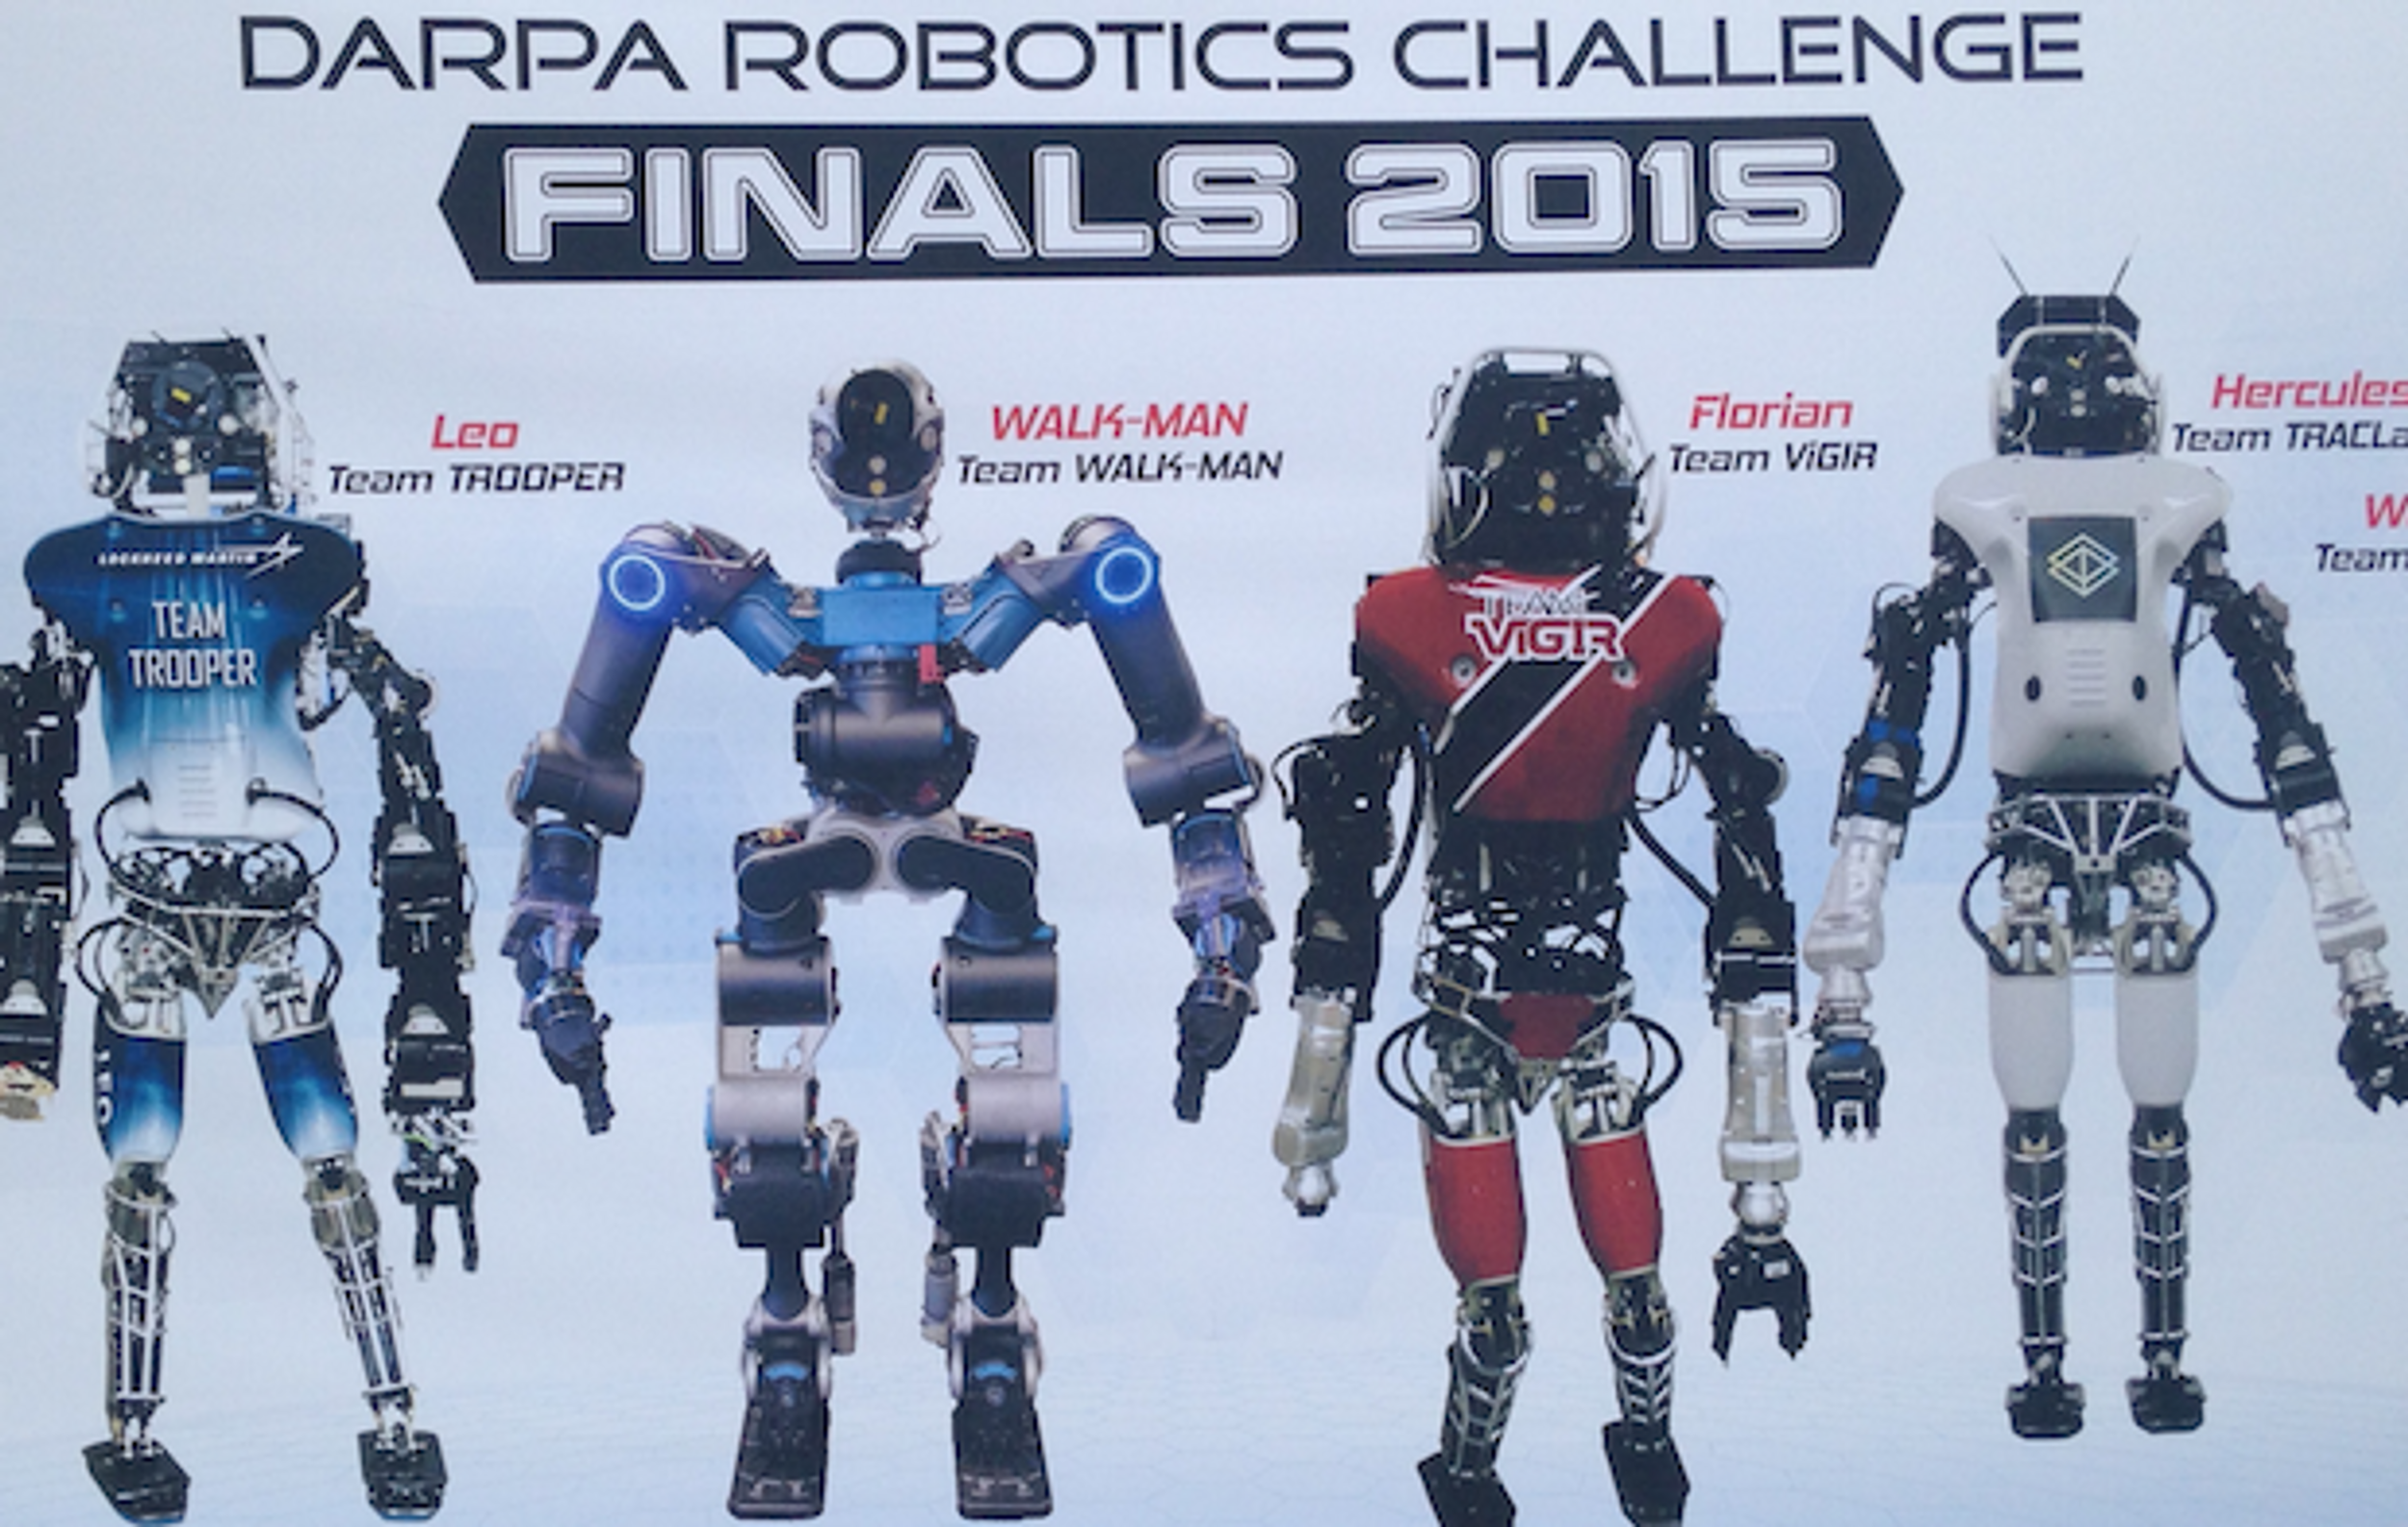 How to Watch the DARPA Robotics Challenge Finals Online